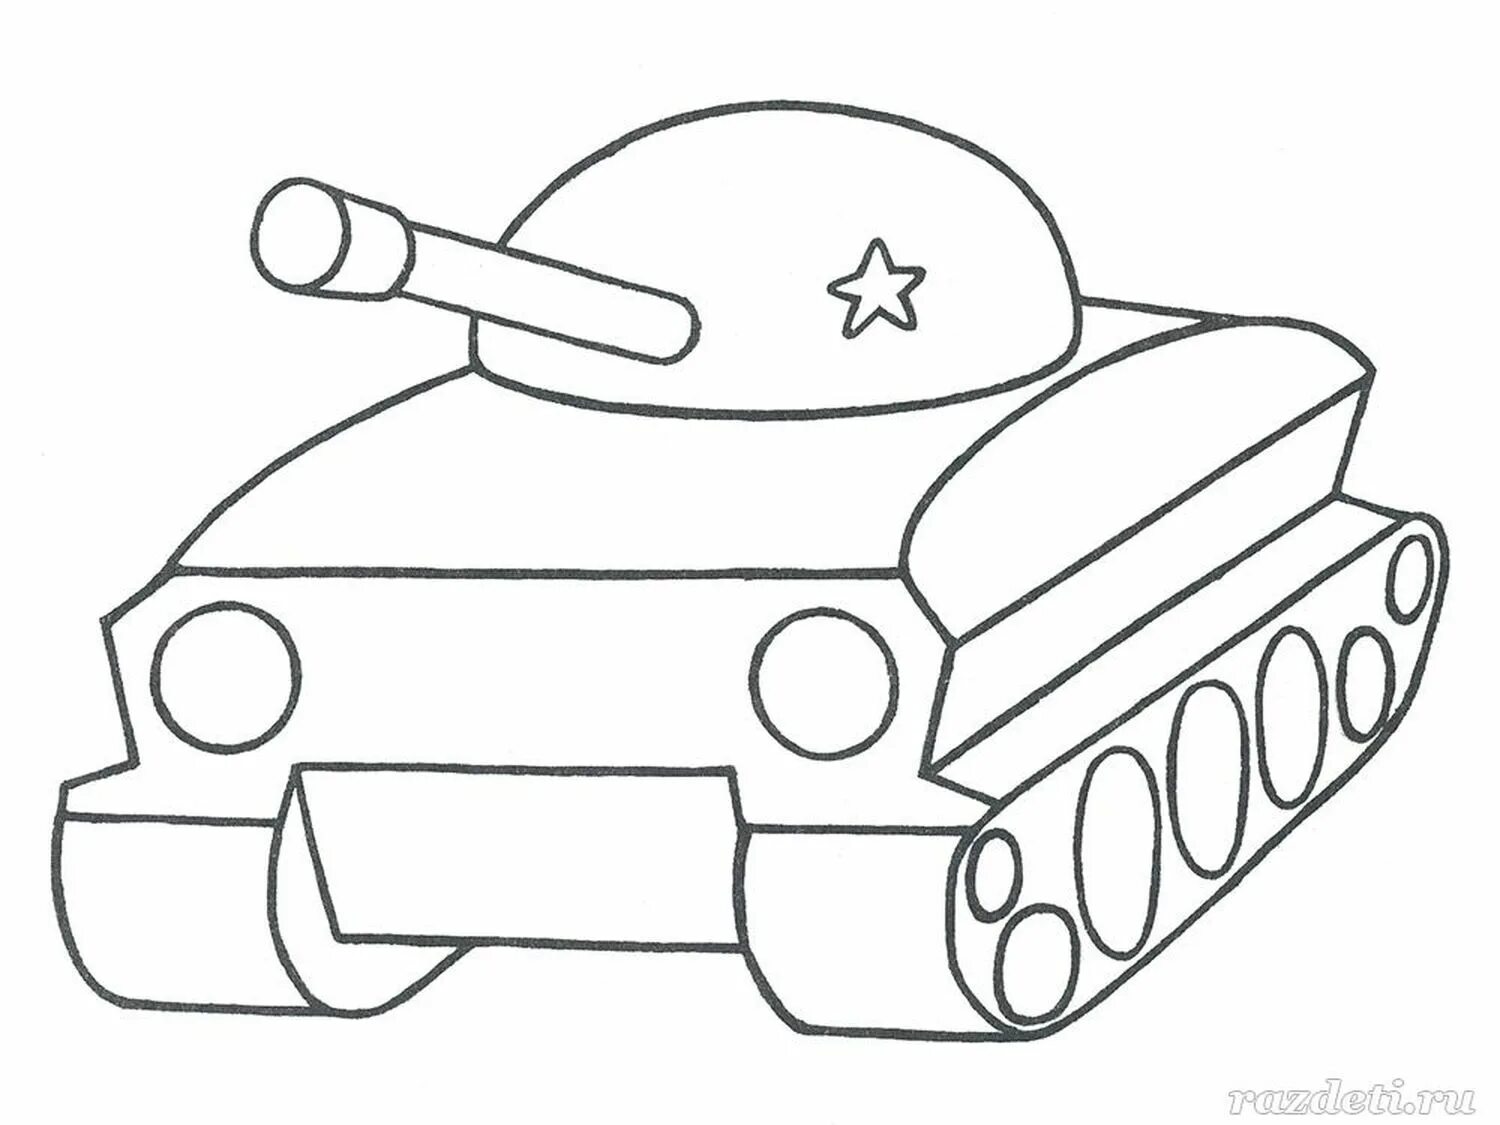 Раскраска 3 танка. Раскраска танк. Раскраска танка для детей. Танк раскраска для малышей. Трафарет танка для вырезания.